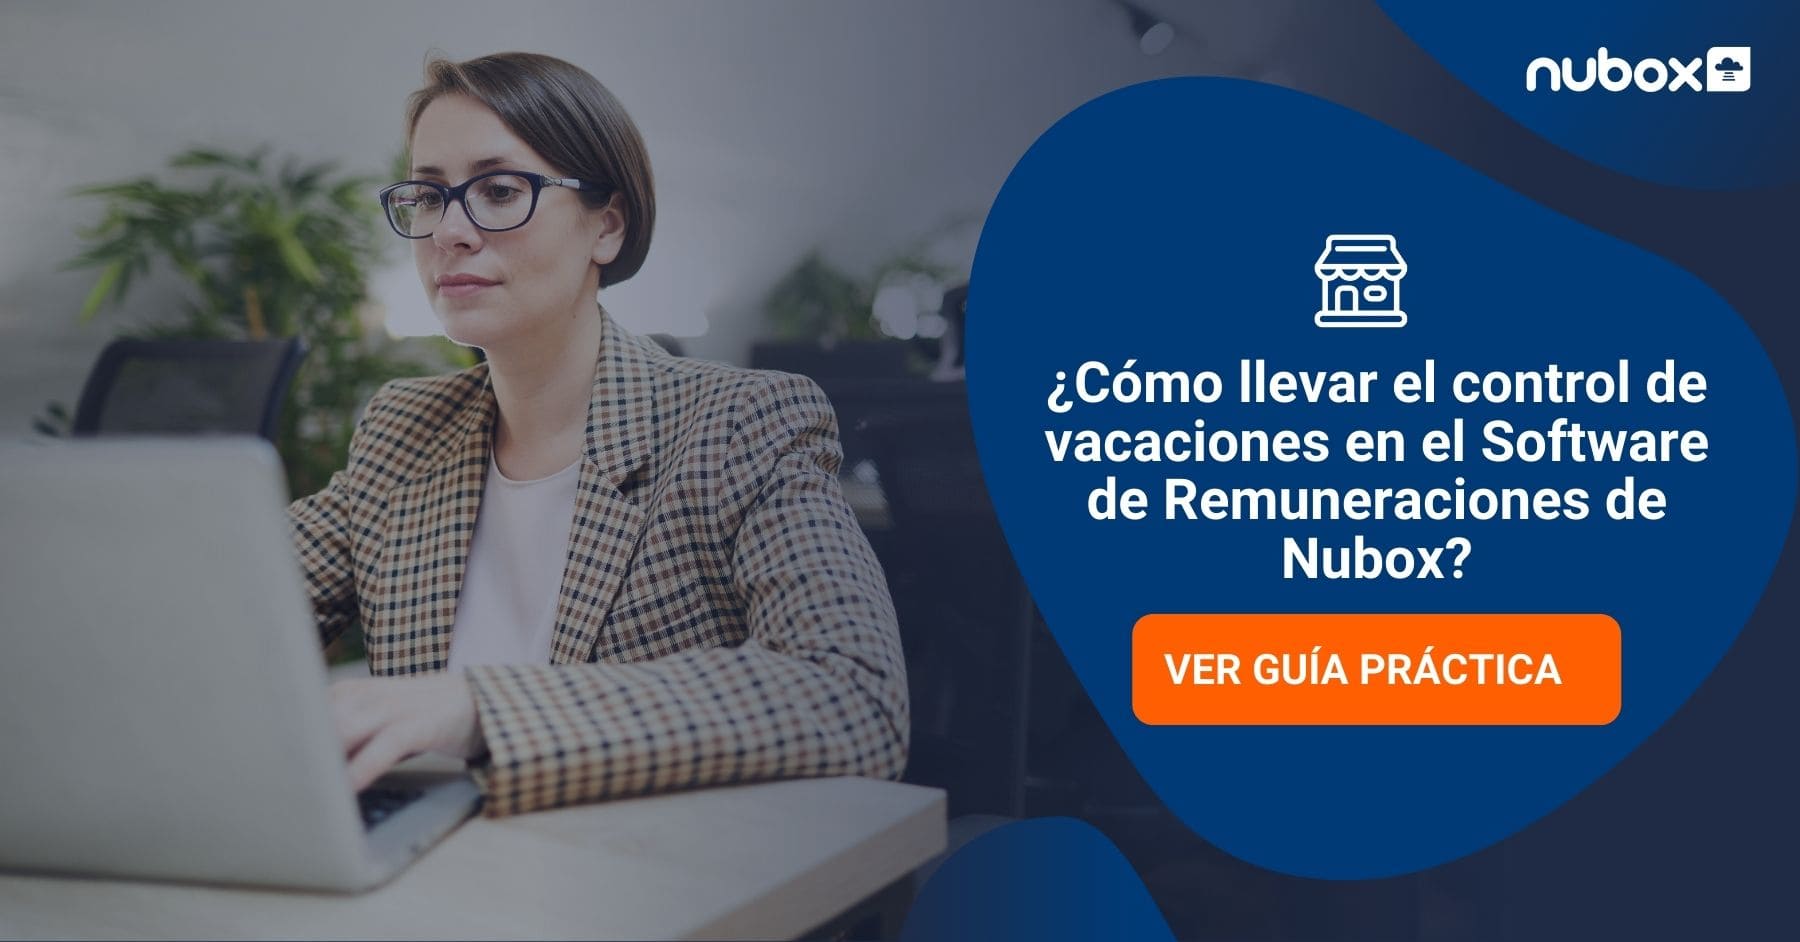 ¿Cómo llevar el control de vacaciones en el Software de Remuneraciones de Nubox?